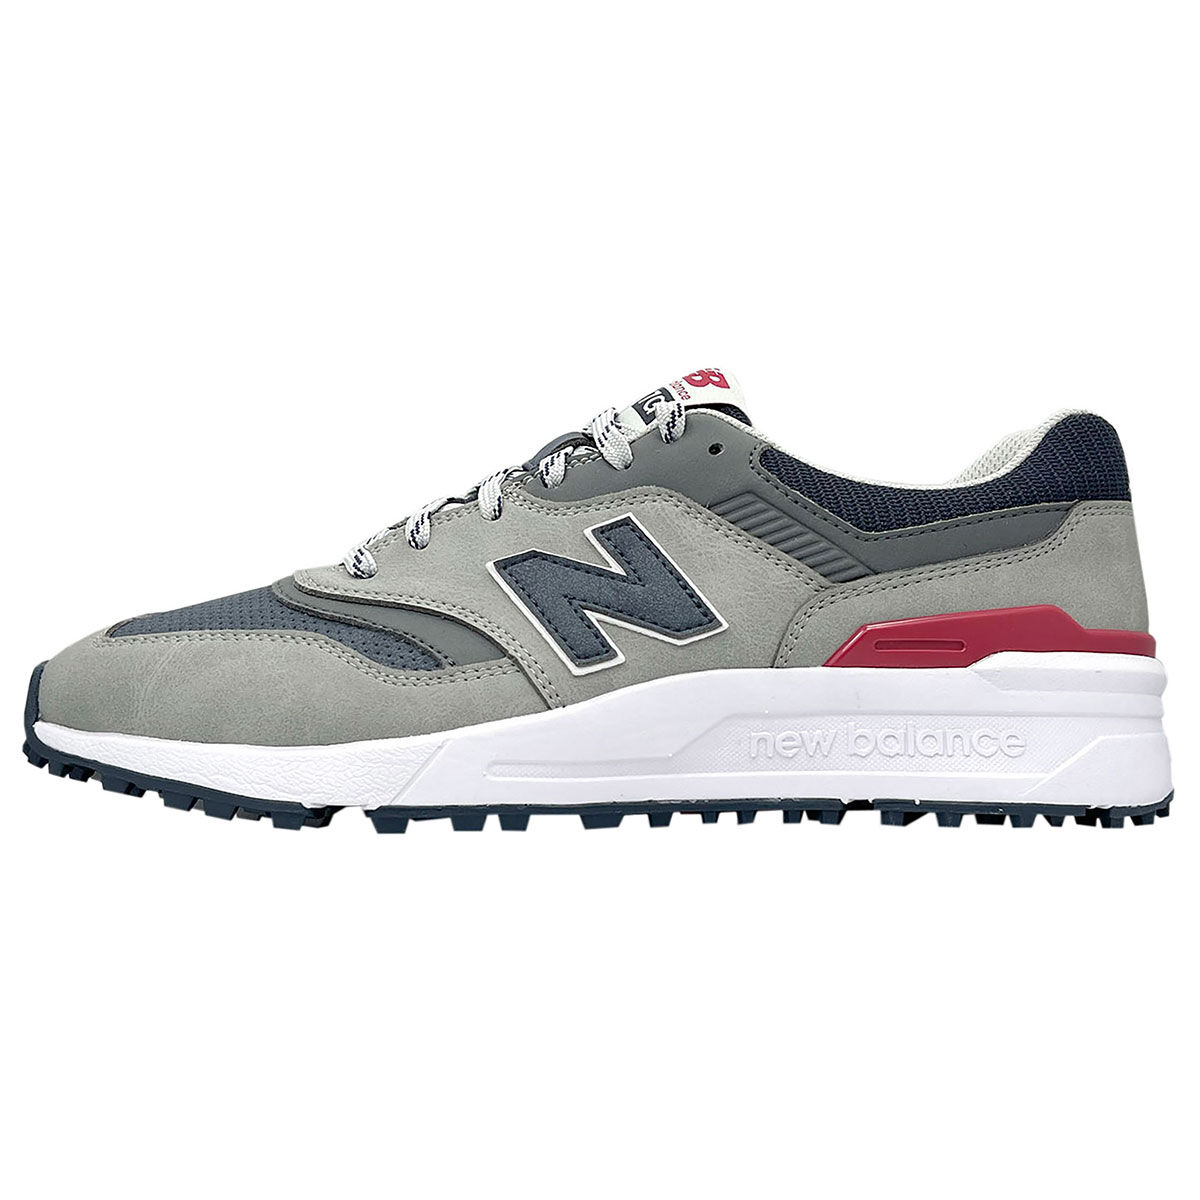 New Balance Men’s 997 Waterproof Spikeless Golf Shoes, Mens, Grey/navy, 9 | American Golf